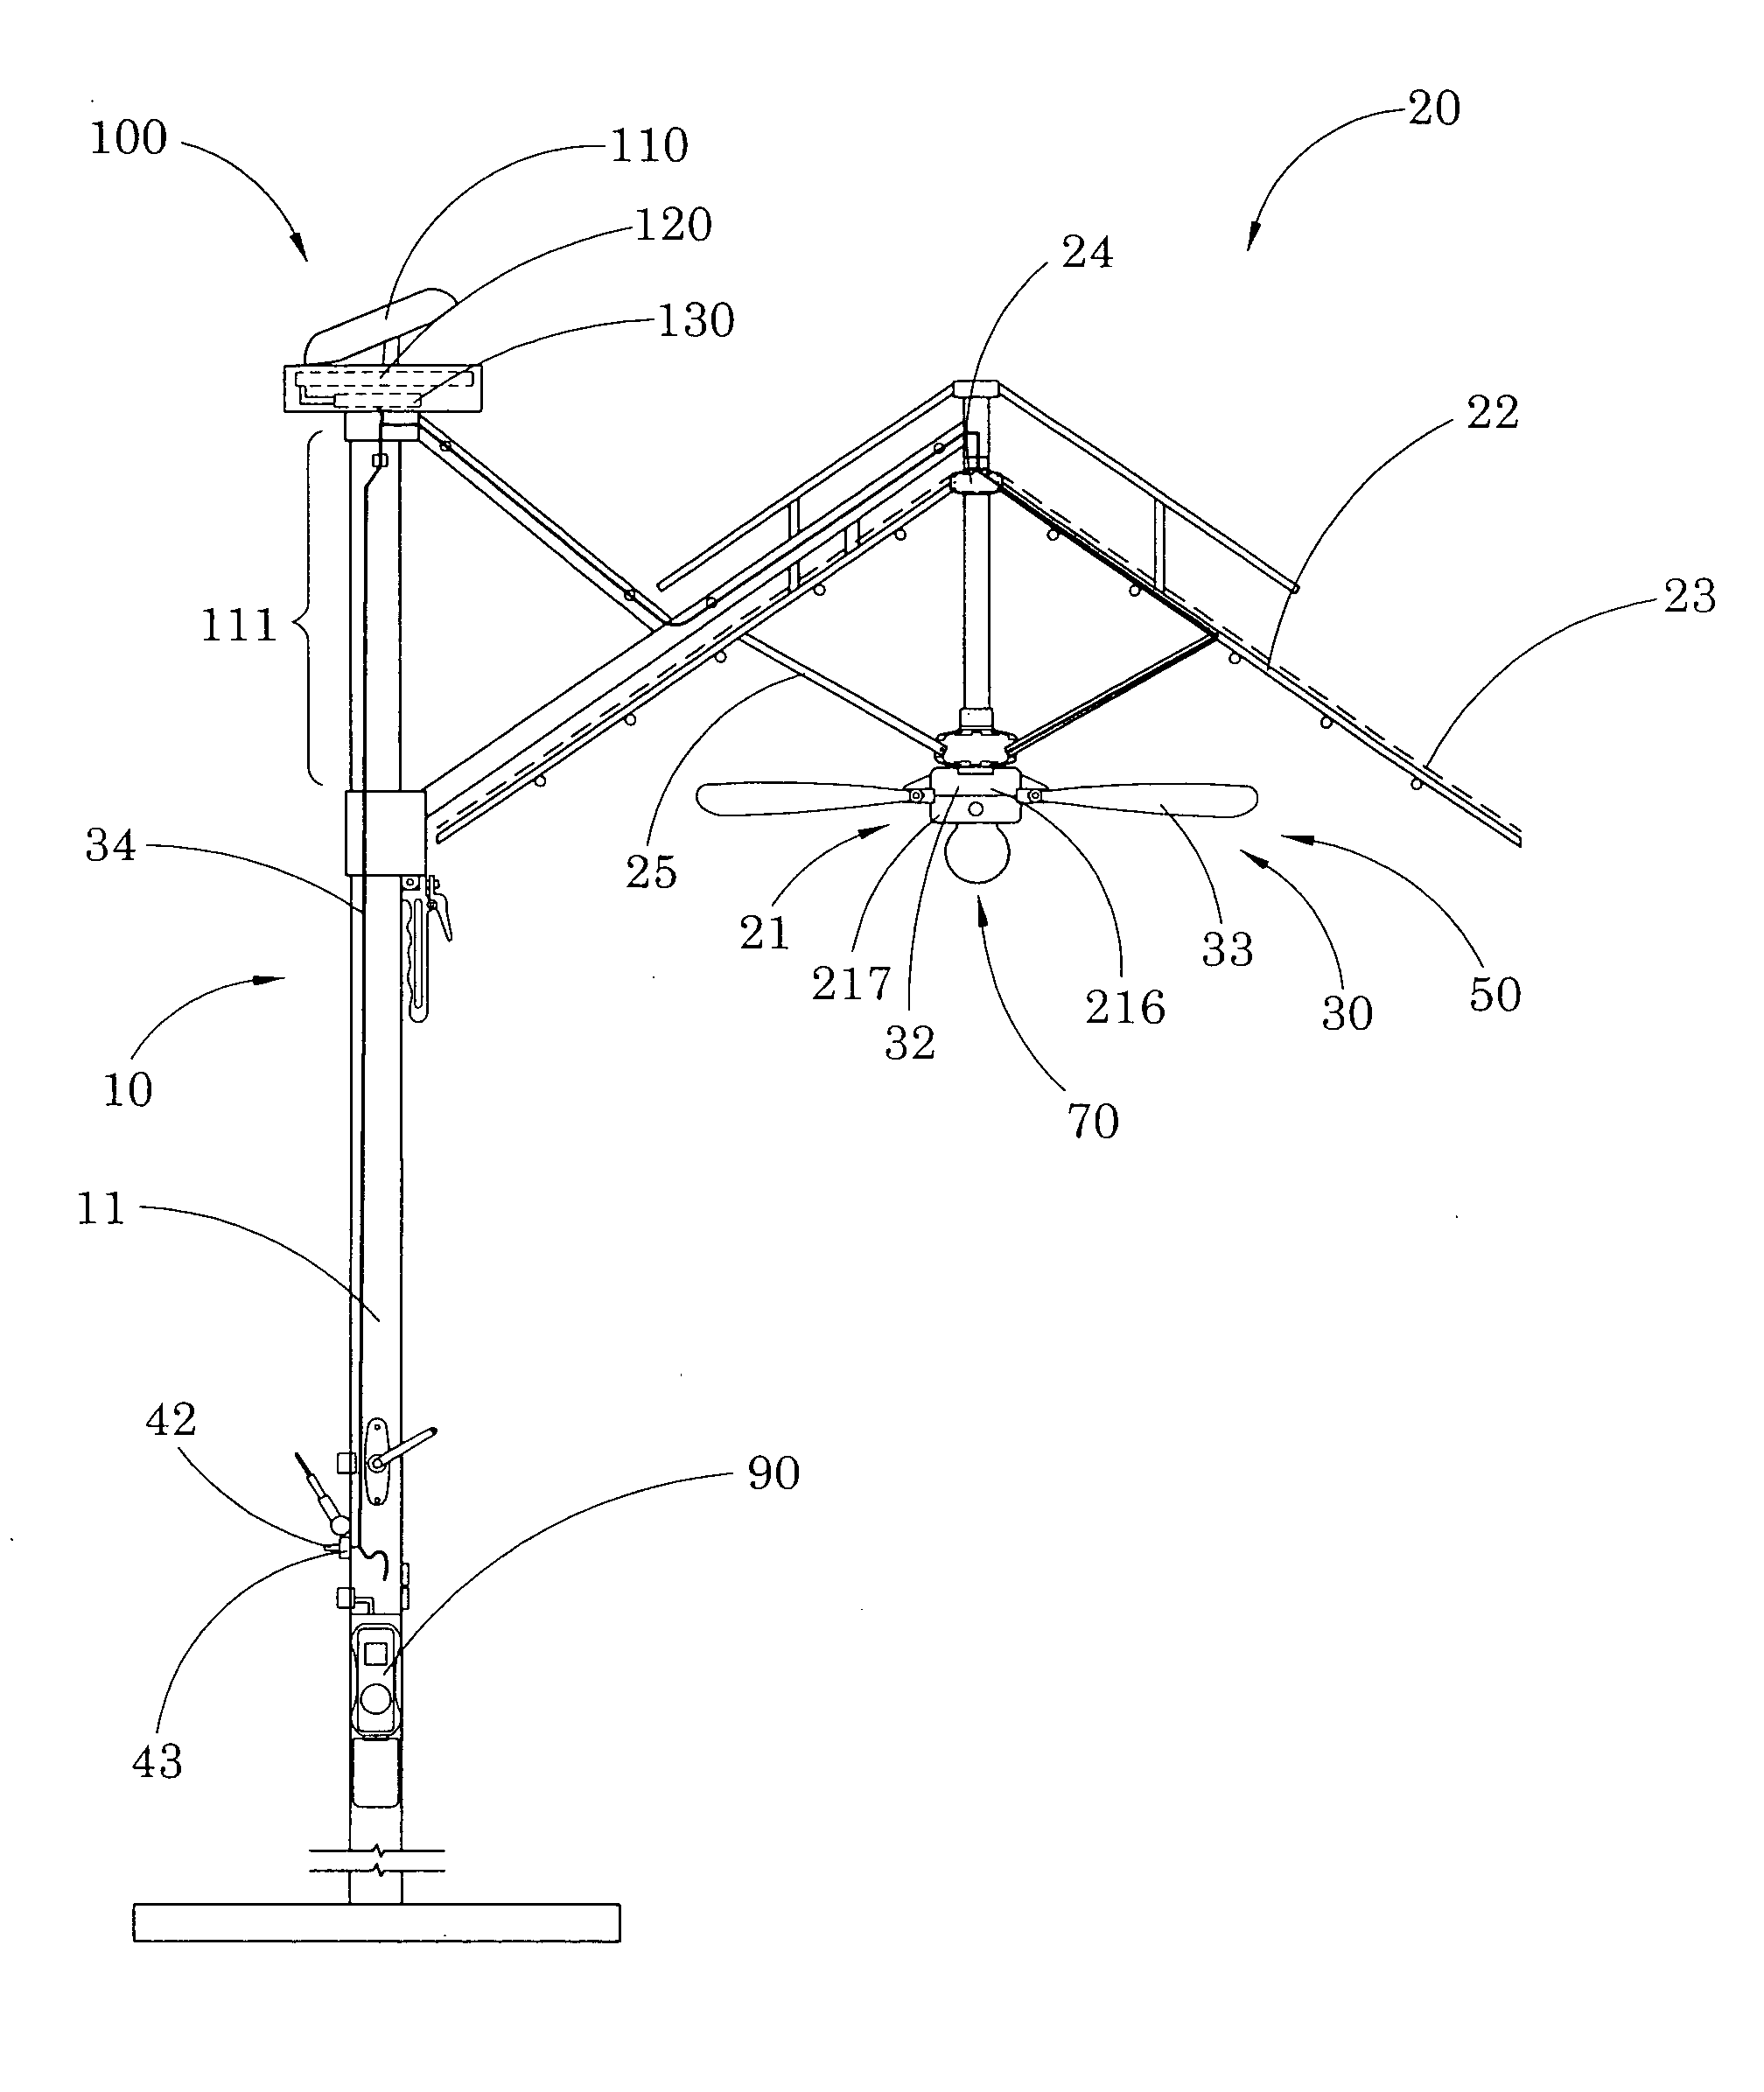 Outdoor umbrella with ventilation arrangement